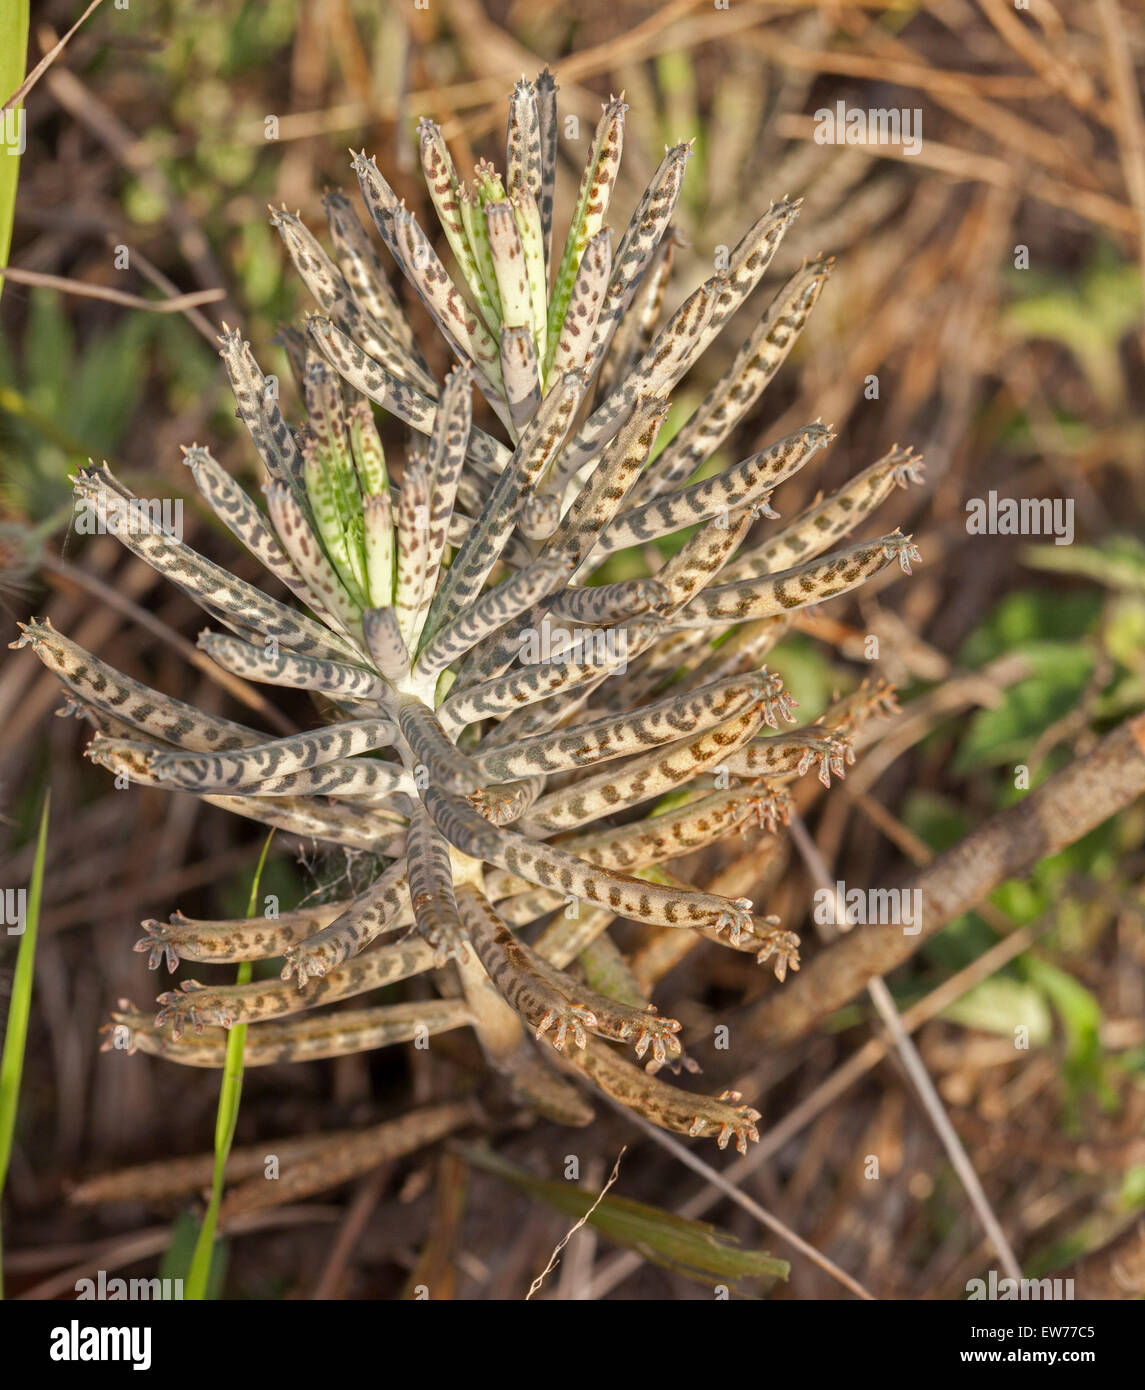 Feuilles gris de mère de millions, plante succulente Bryophyllum delagoense / Kalanchoe, une espèce de mauvaises herbes en Australie Banque D'Images